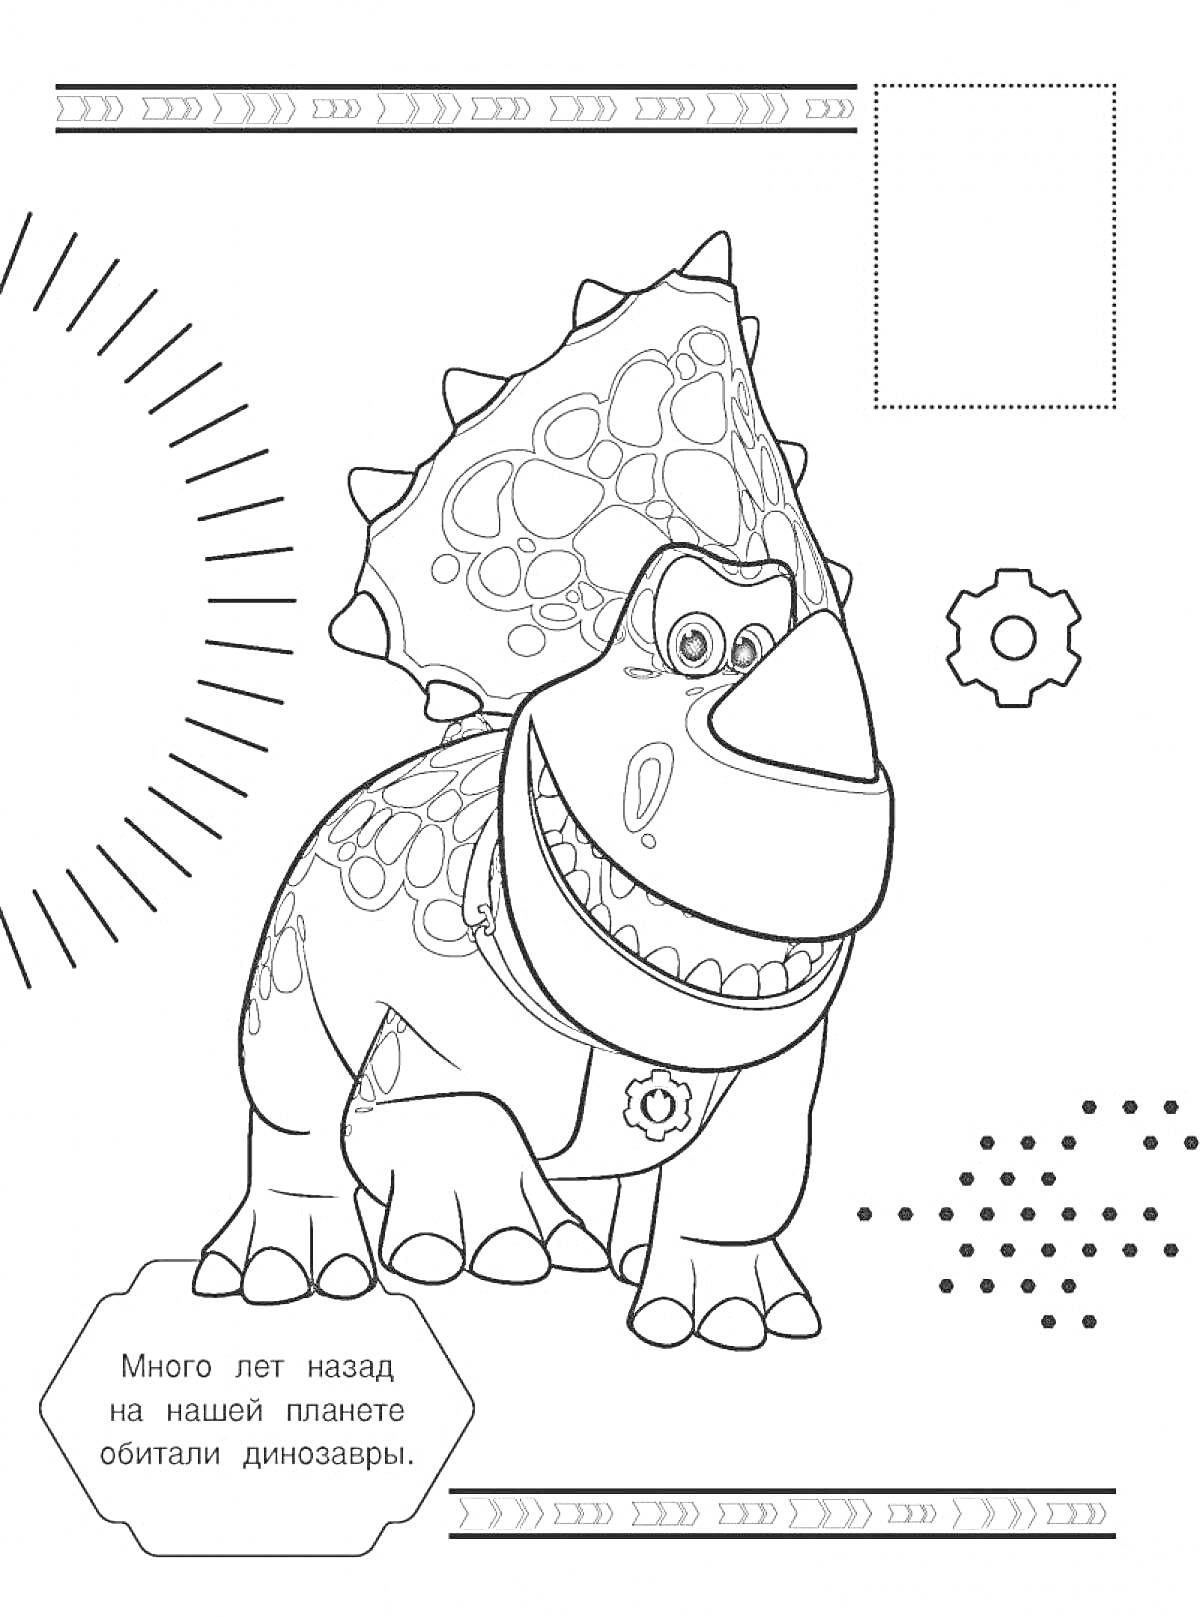 Раскраска весёлый динозавр с фоном из элементов шестерни, точек и лучей солнца